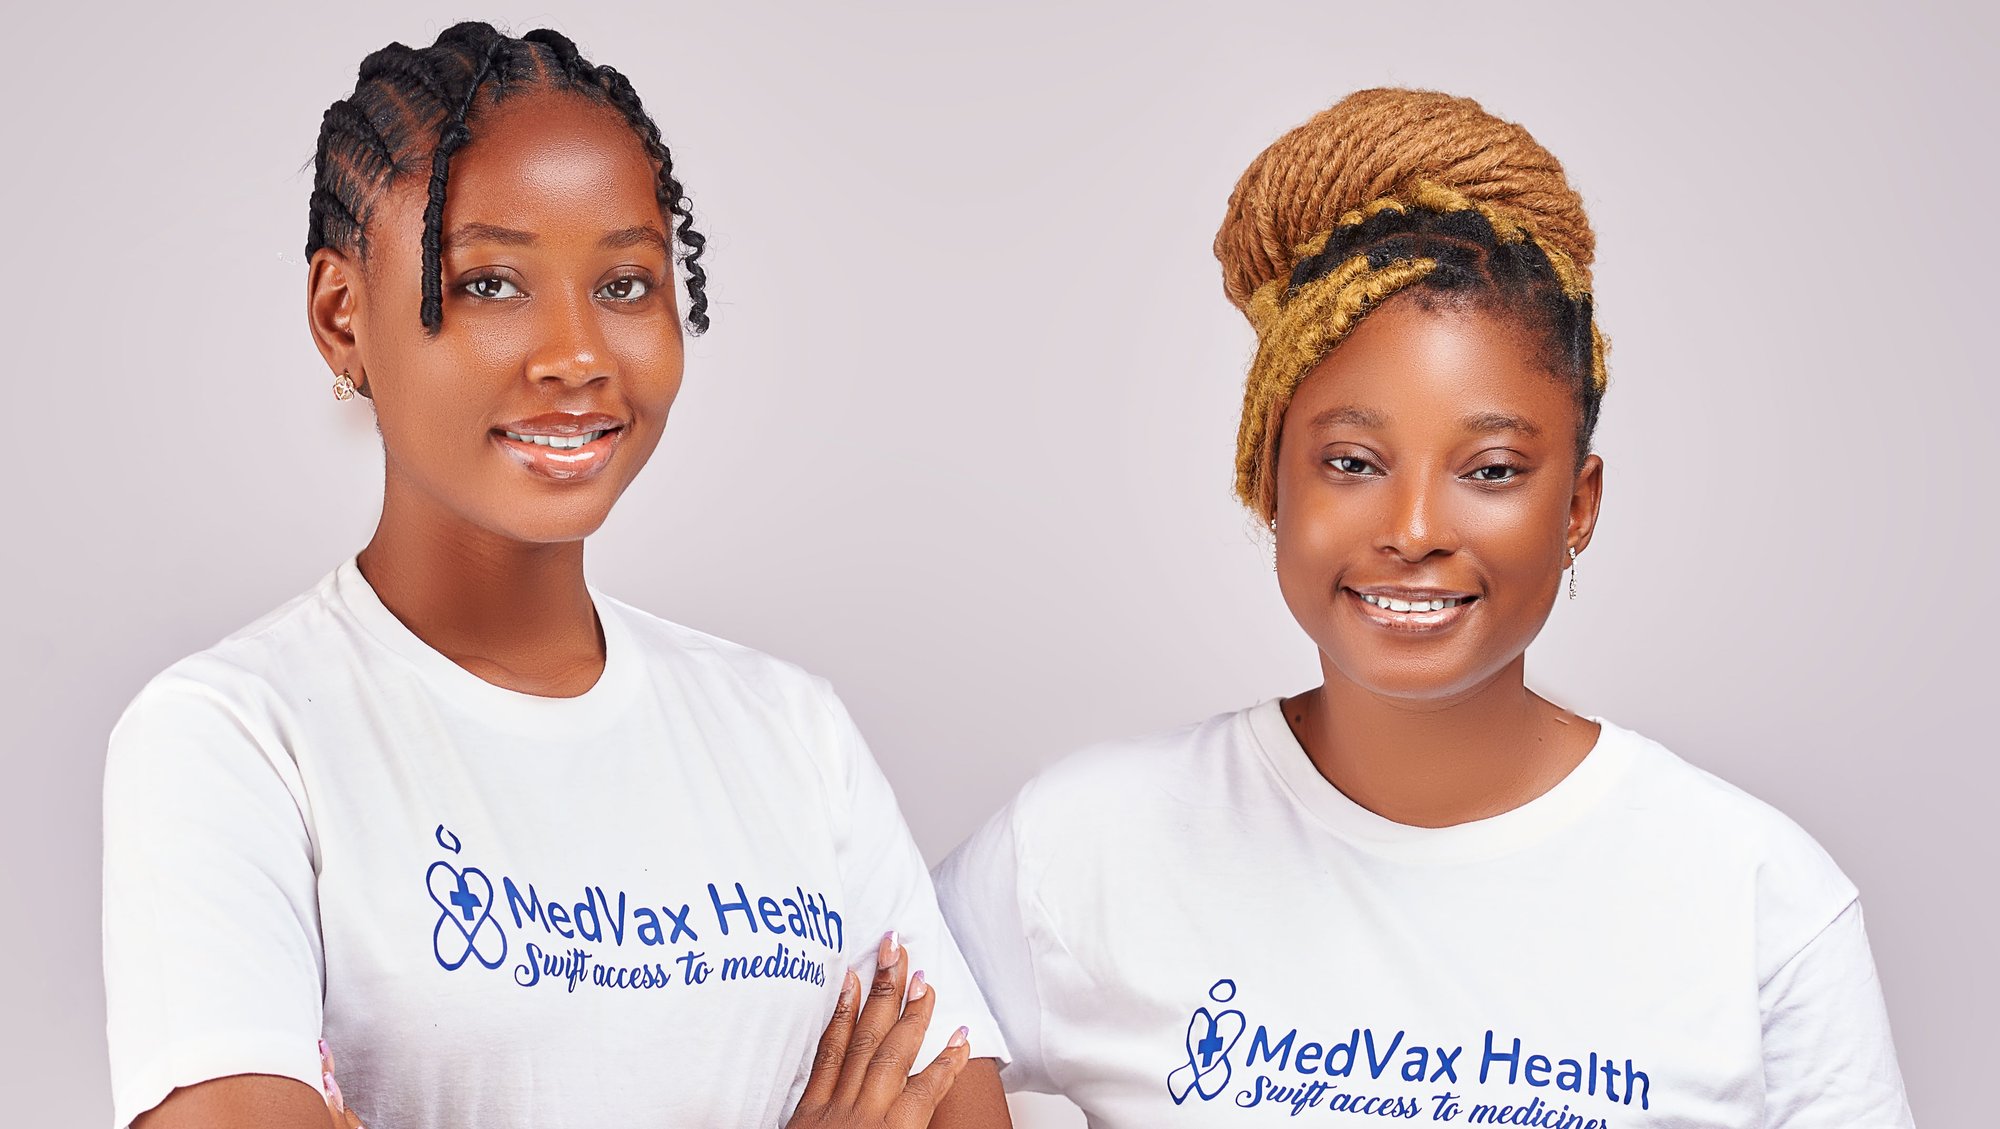 Medvax Health